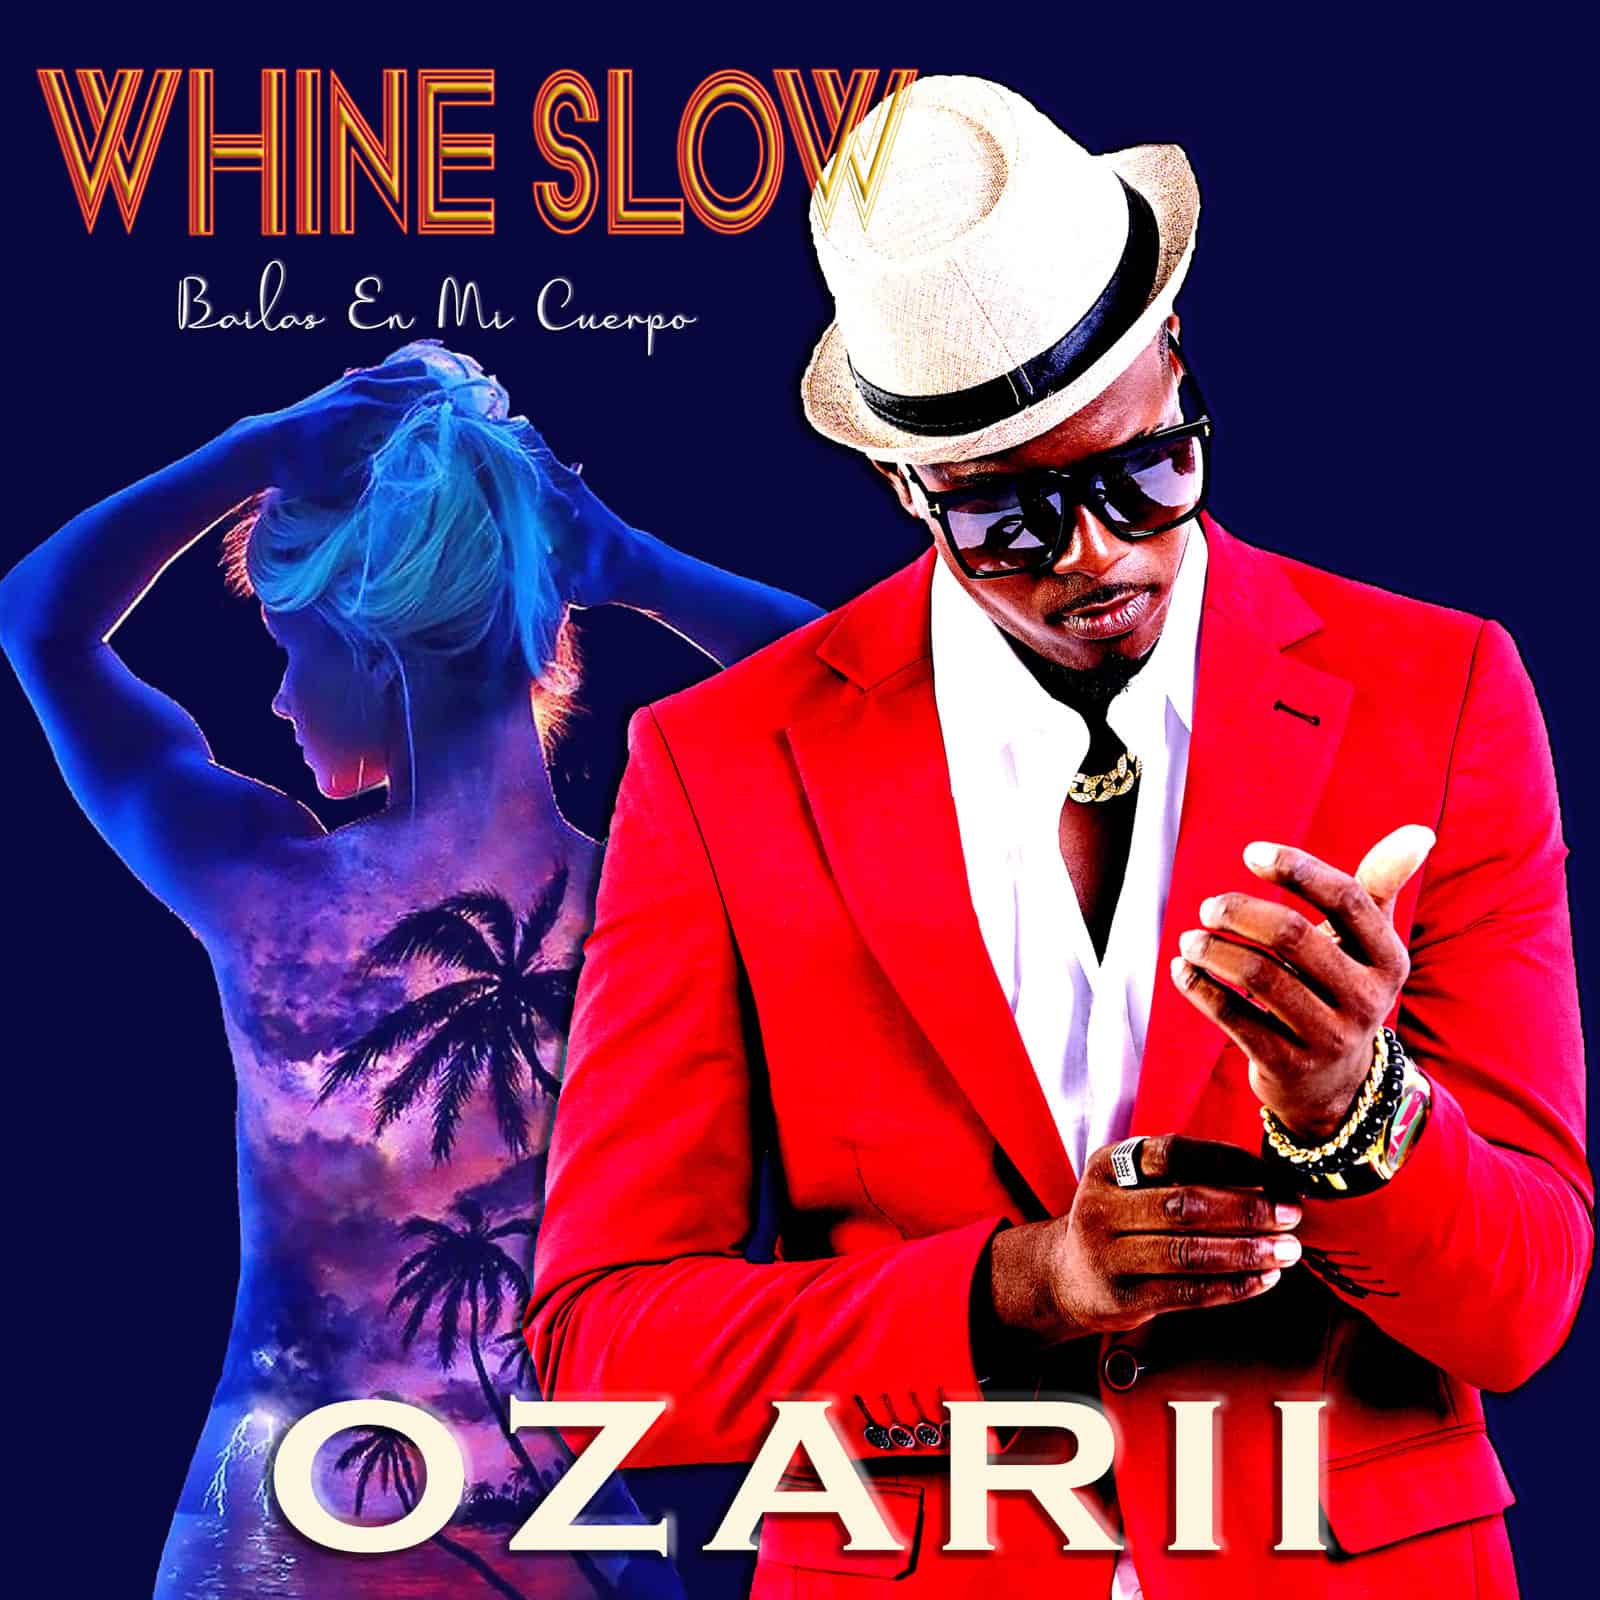 Ozarii - Whine Slow (Bailas en mi cuerpo)